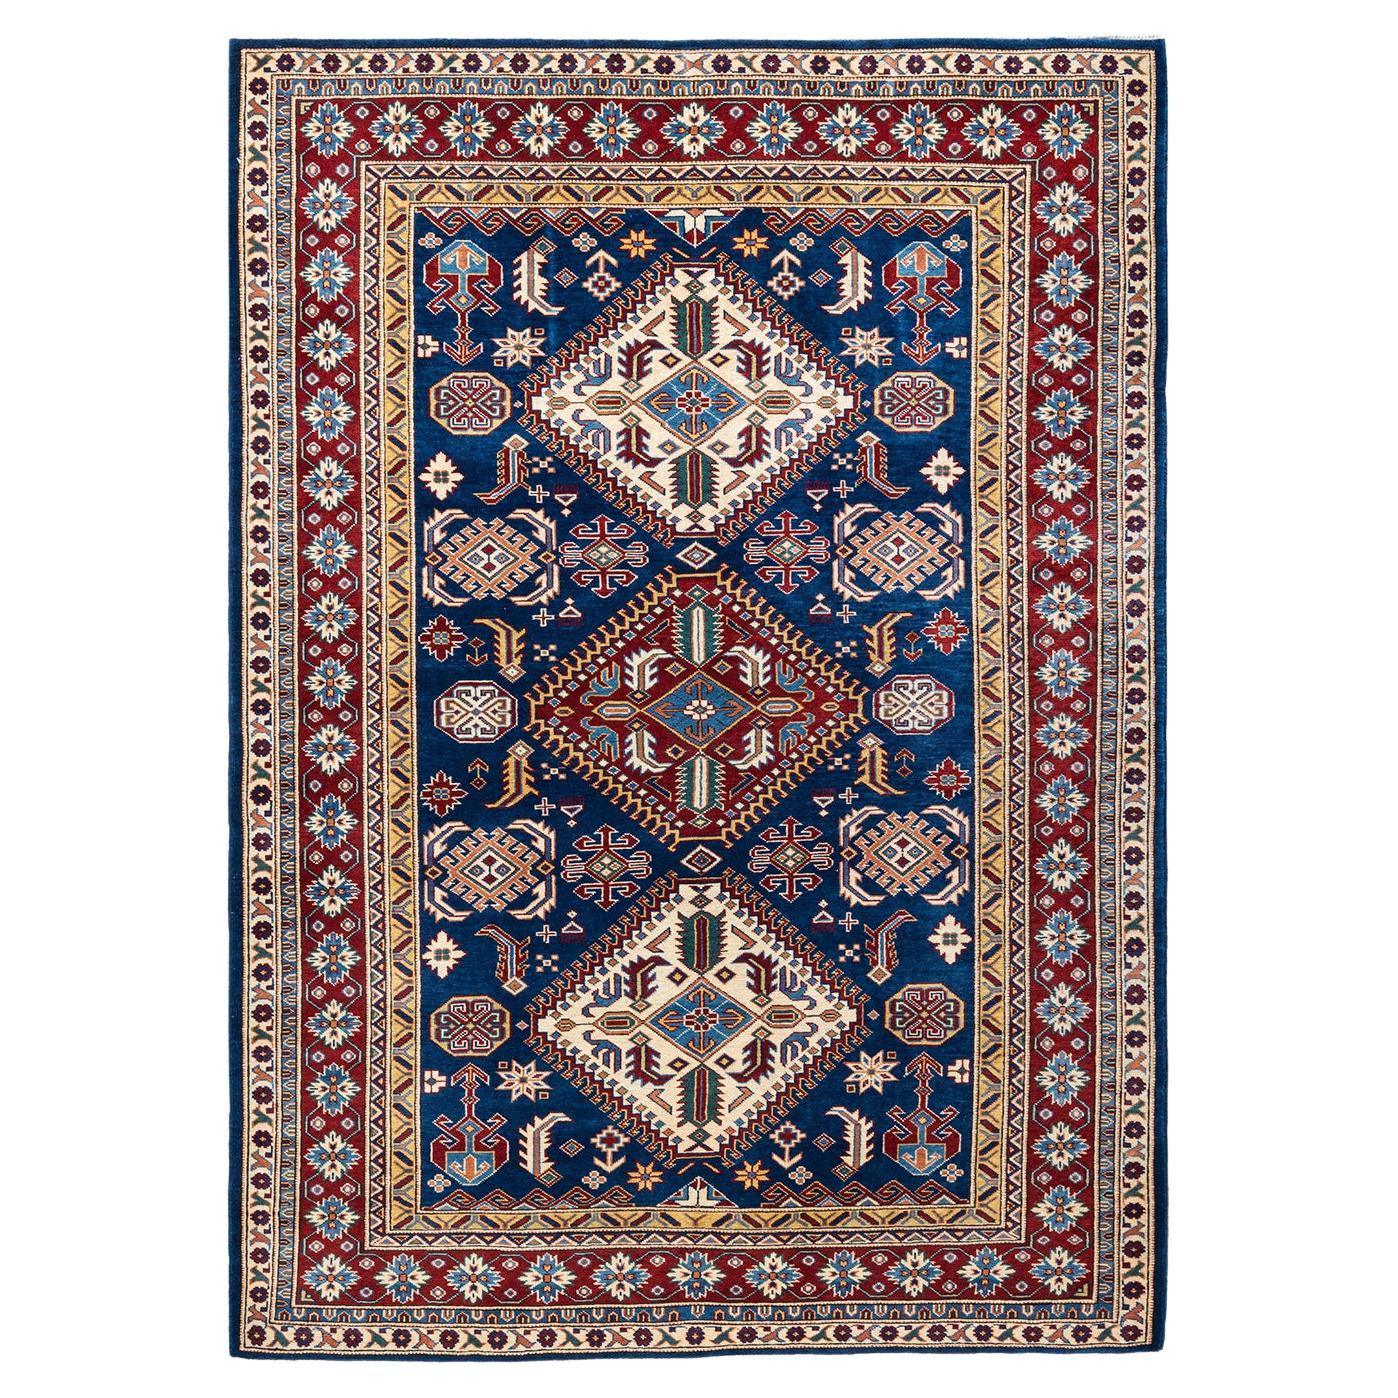 Handgeknüpfter blauer Teppich mit böhmischem Stammes- und Stammesbesatz, Unikat